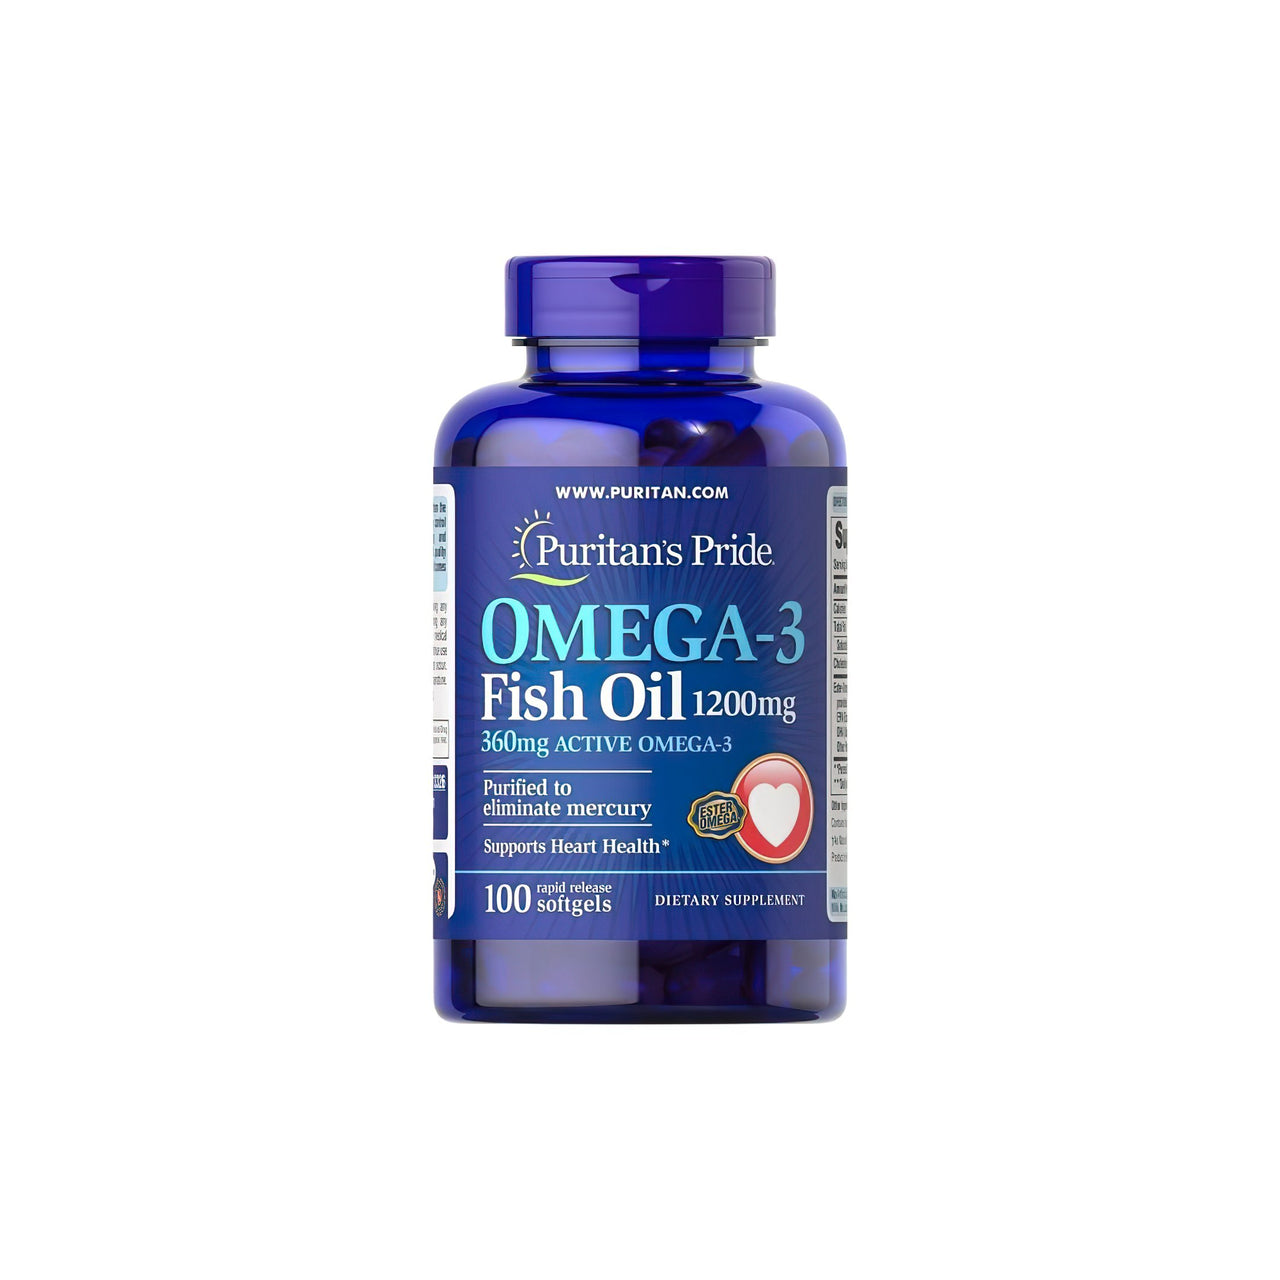 Un supplément d'huile de poisson oméga-3 1200 mg (360 mg d'oméga-3 actif) 100 softgels de Puritan's Pride pour la santé cardiovasculaire et la fonction cognitive.